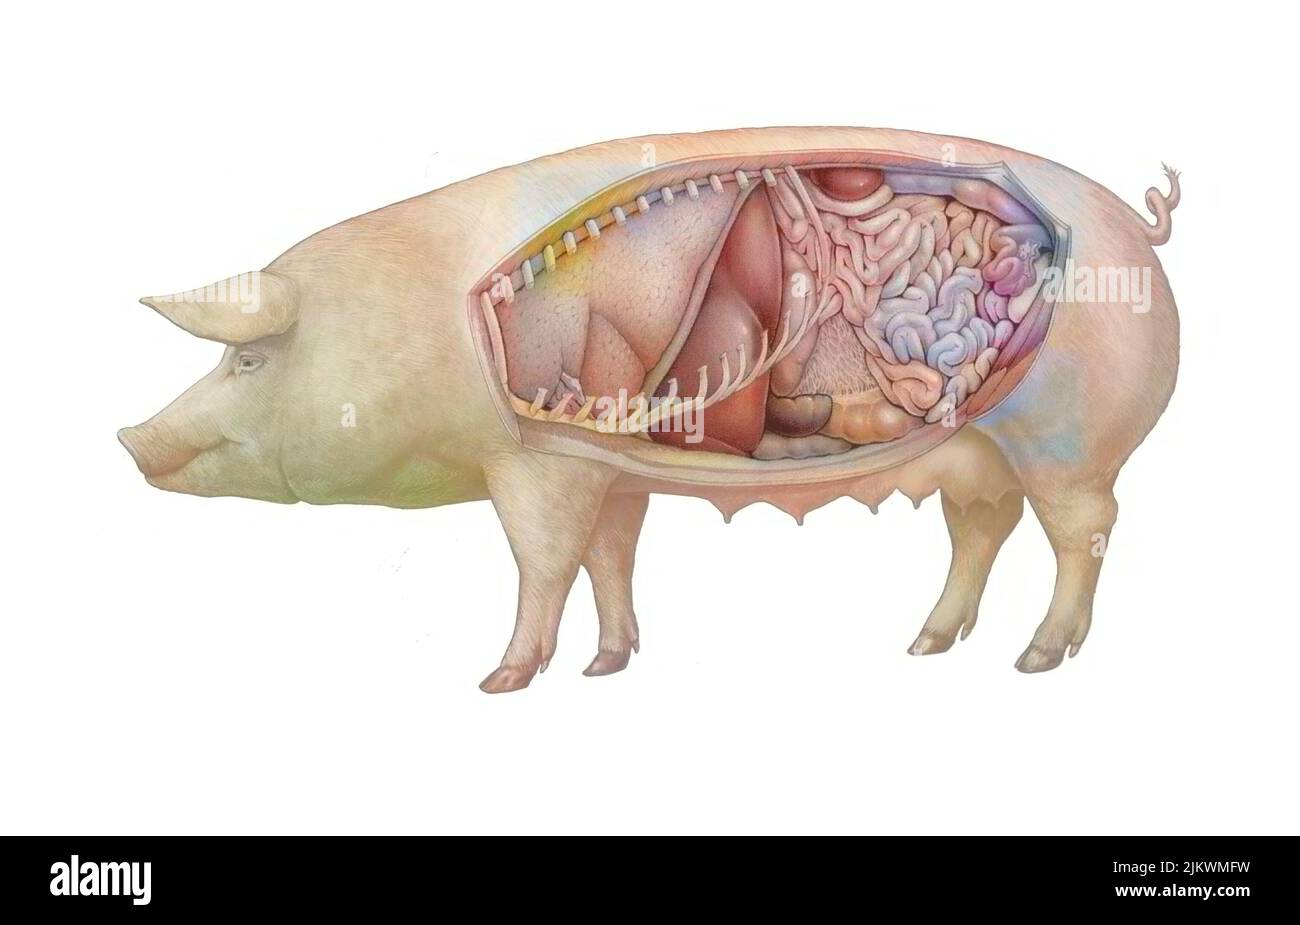 Anatomie d'une truie montrant les poumons, système digestif. Banque D'Images